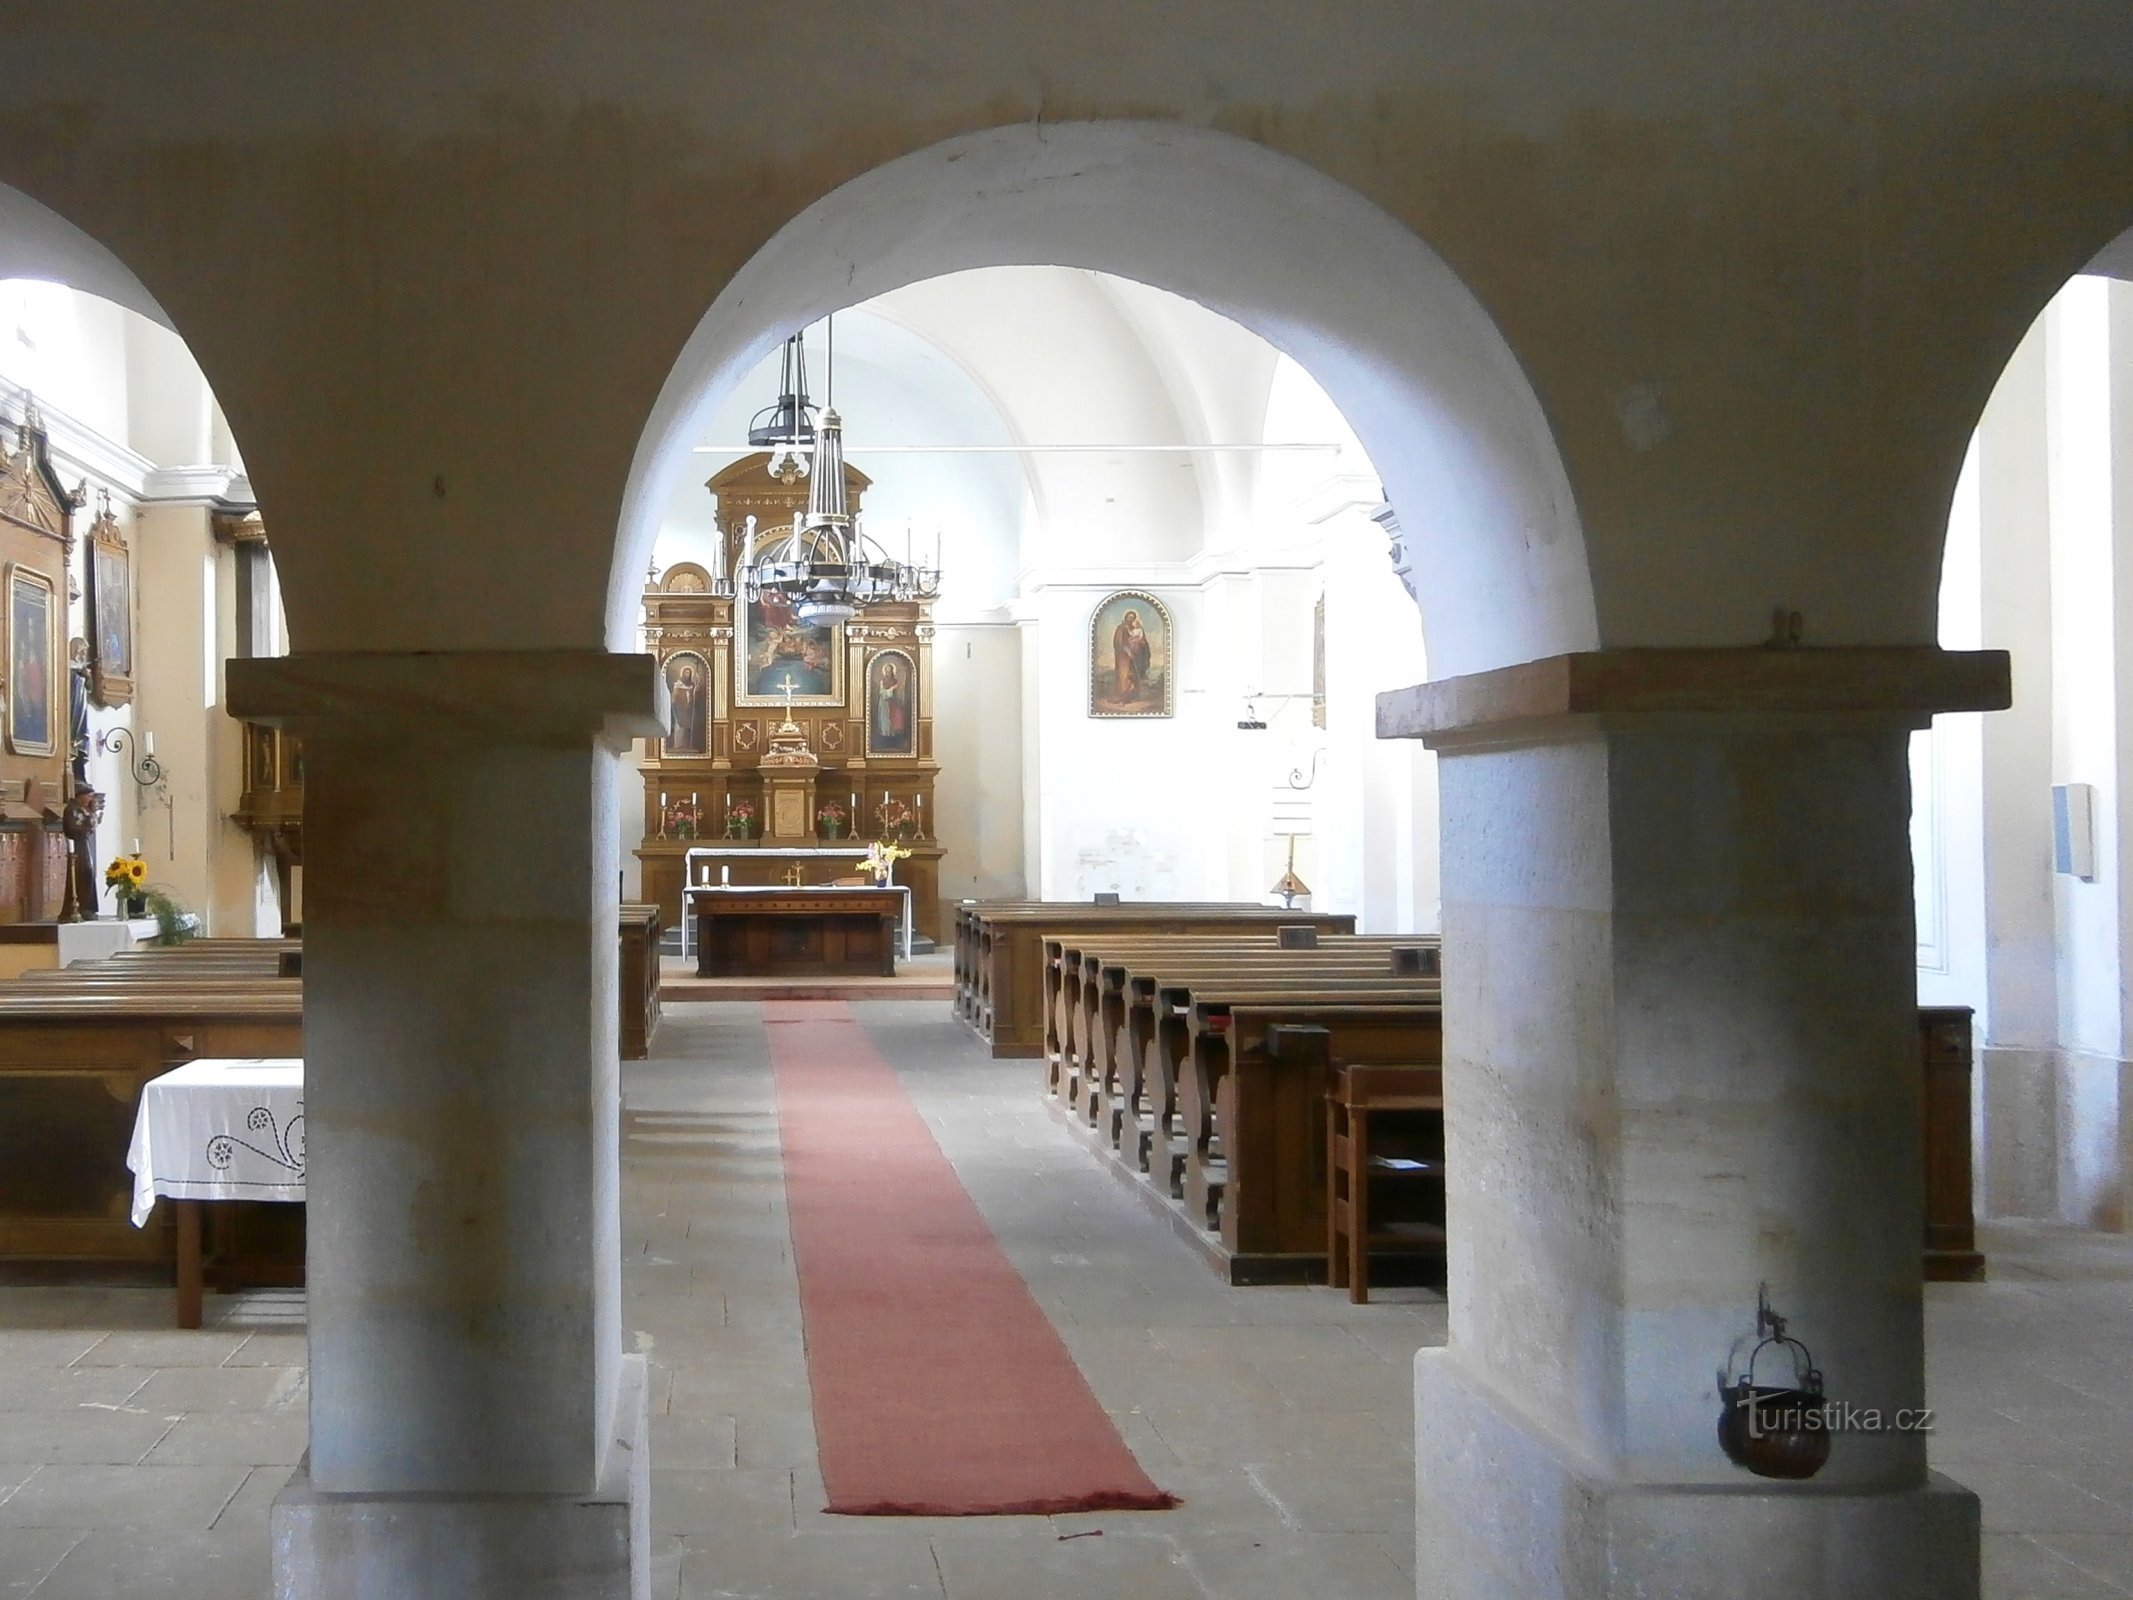 聖三位一体教会 (Všestary)